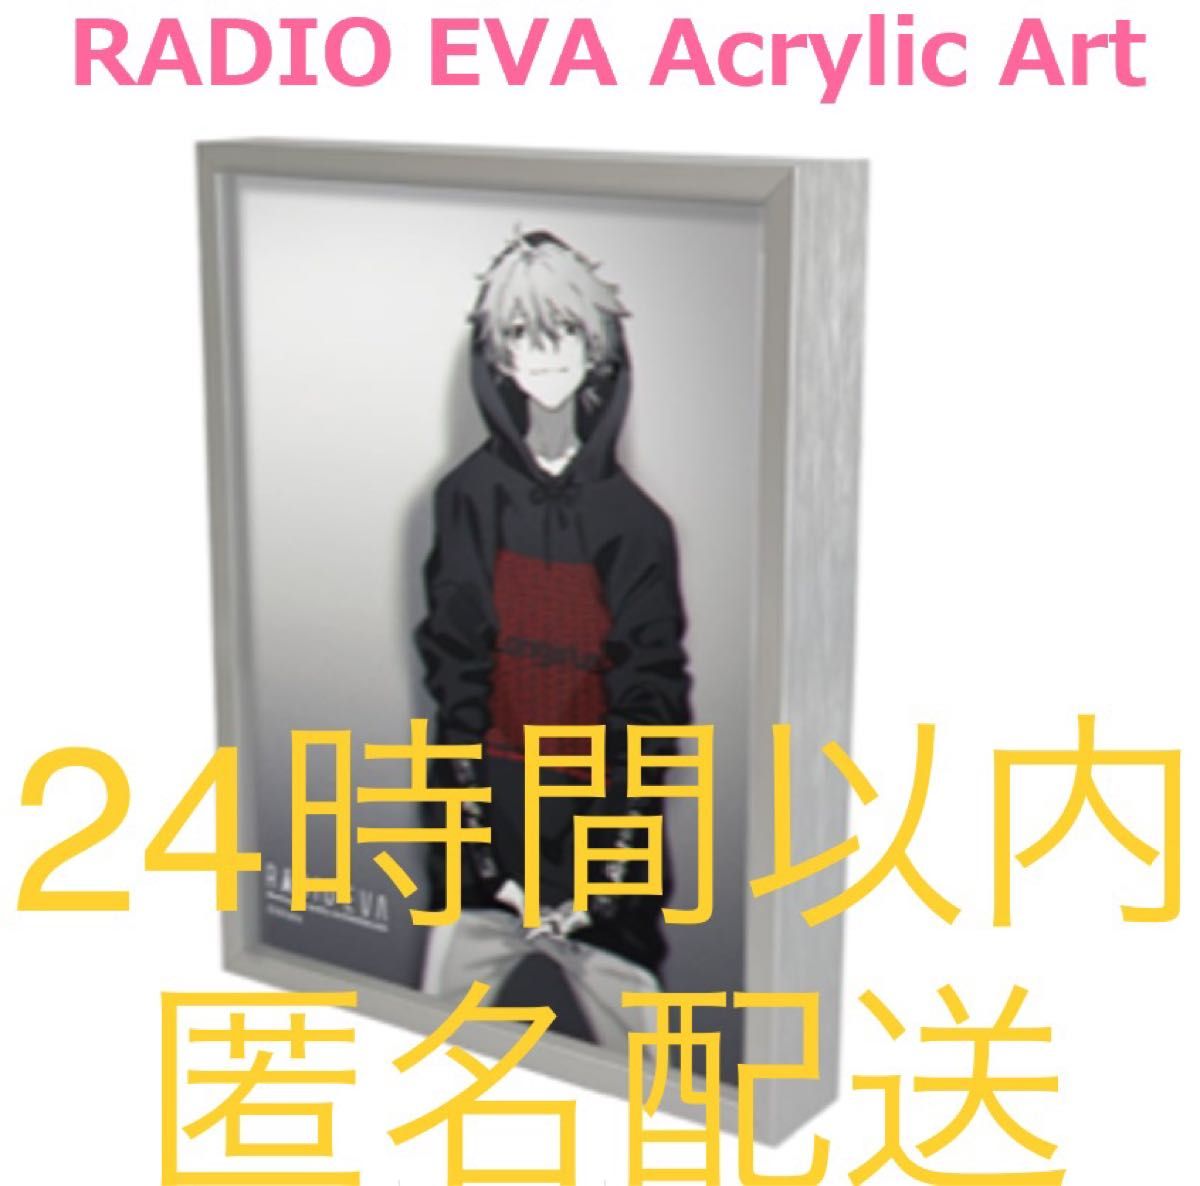 RADIO EVA Acrylic Art/カヲル エヴァ アクリルアート